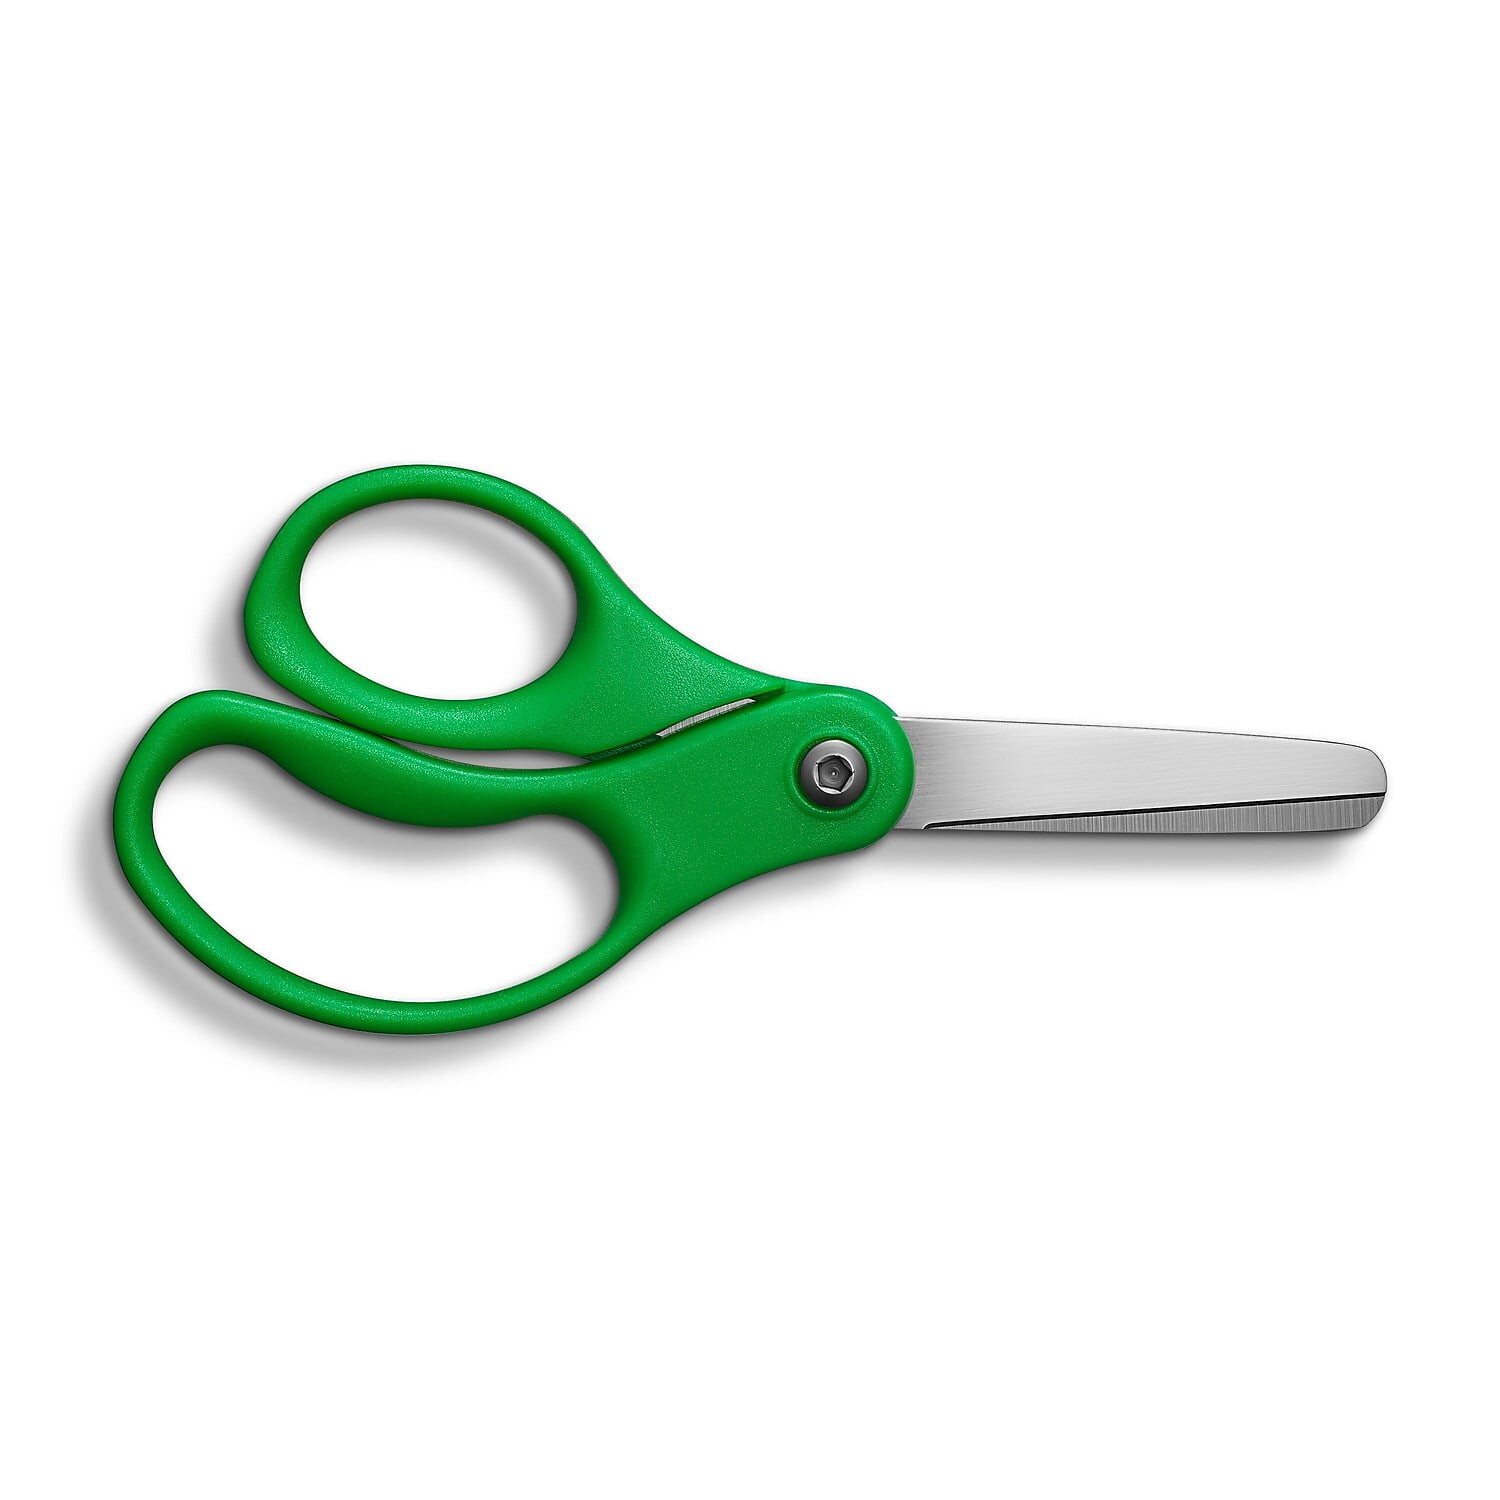 Office Depot Brand Kids Scissors 5 Handle Blunt Tip Assorted